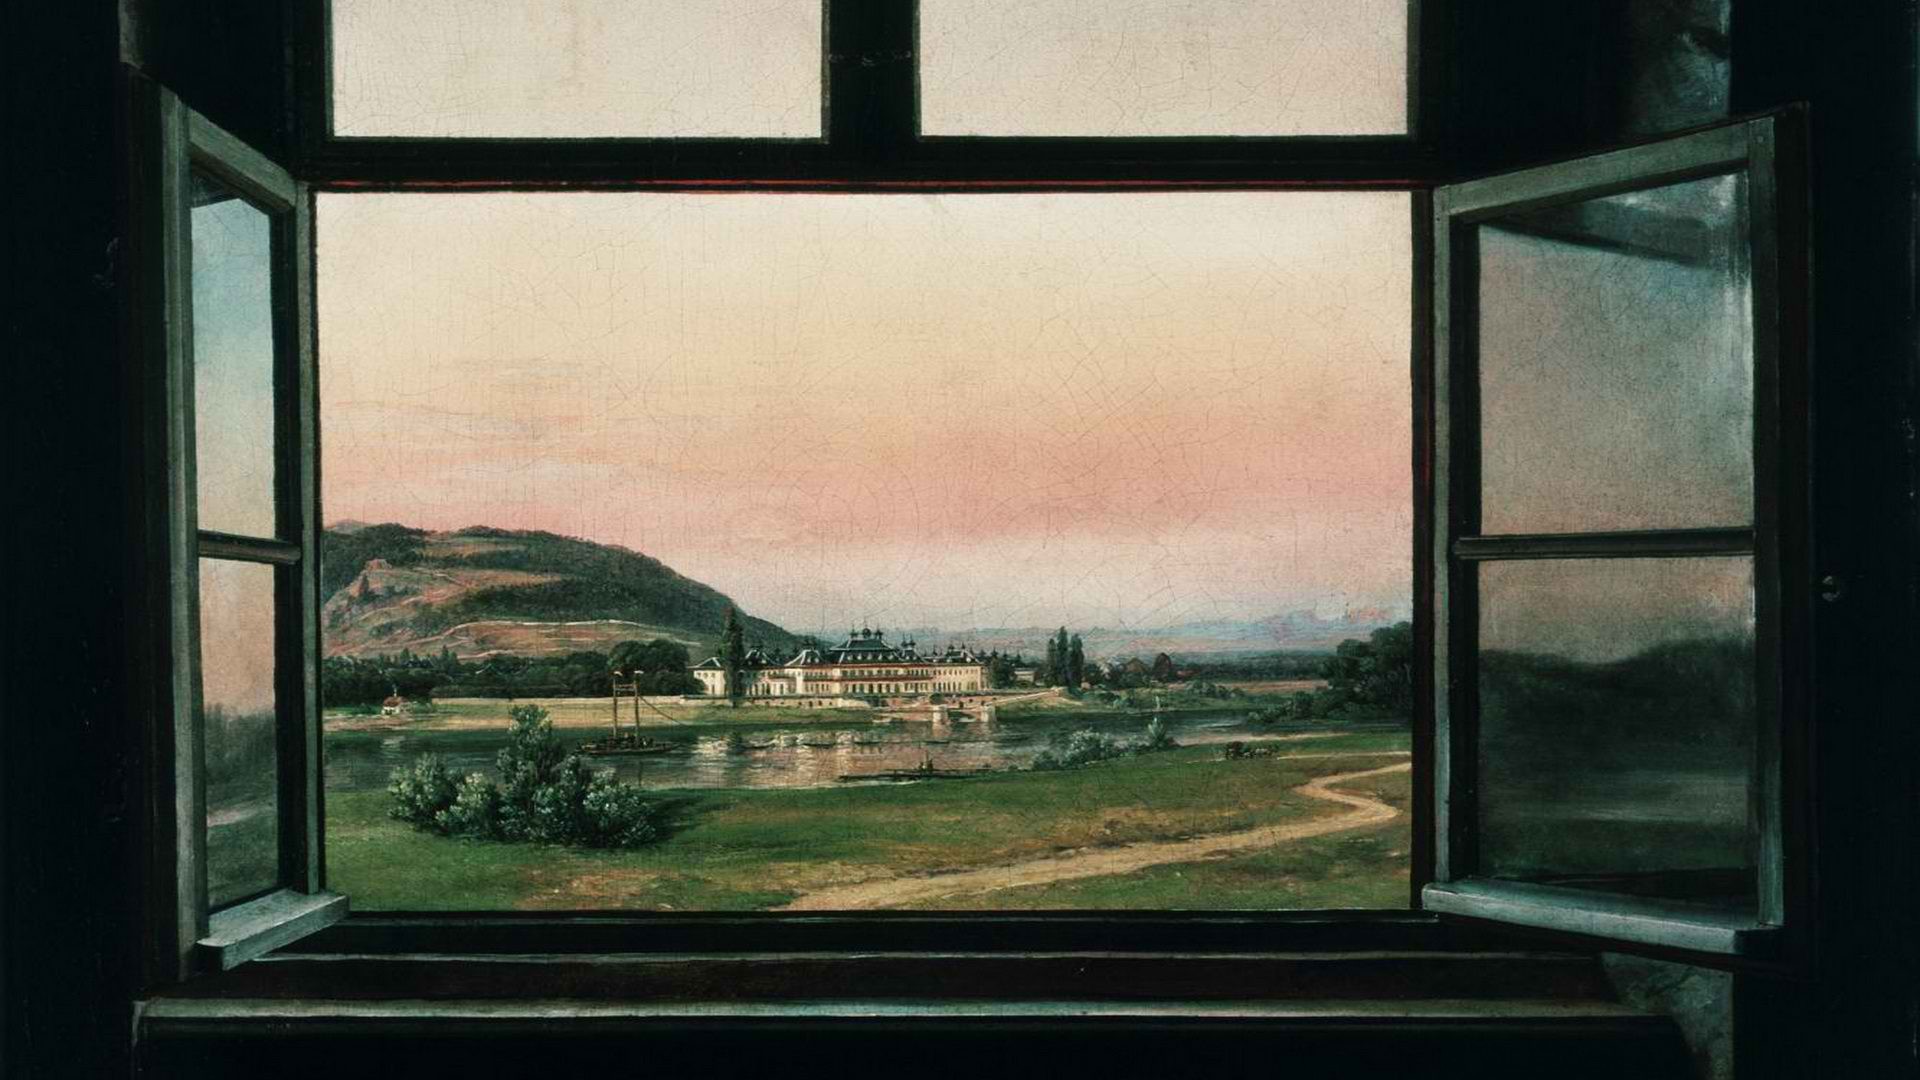 house window wallpaper